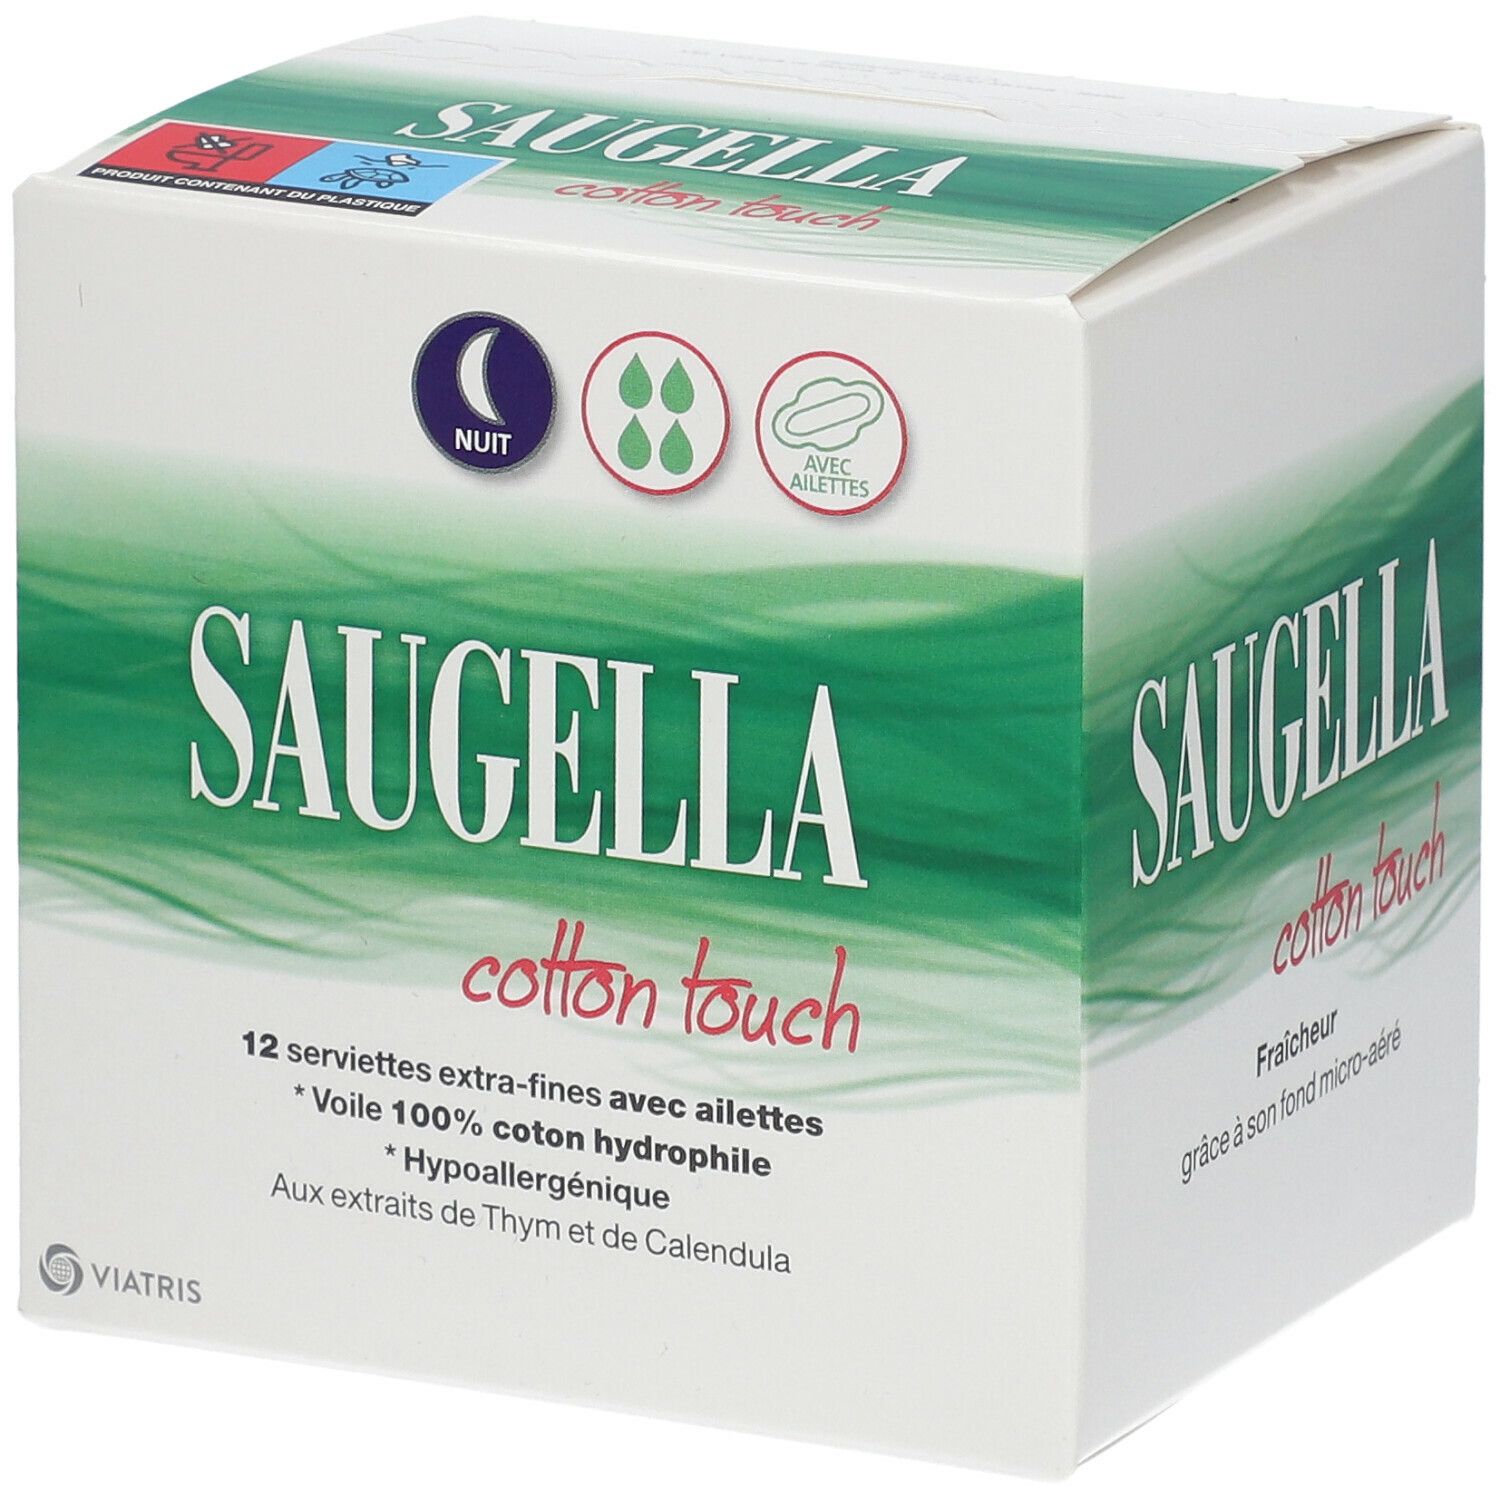 Saugella : Cotton touch serviette extra-fine avec ailettes jour